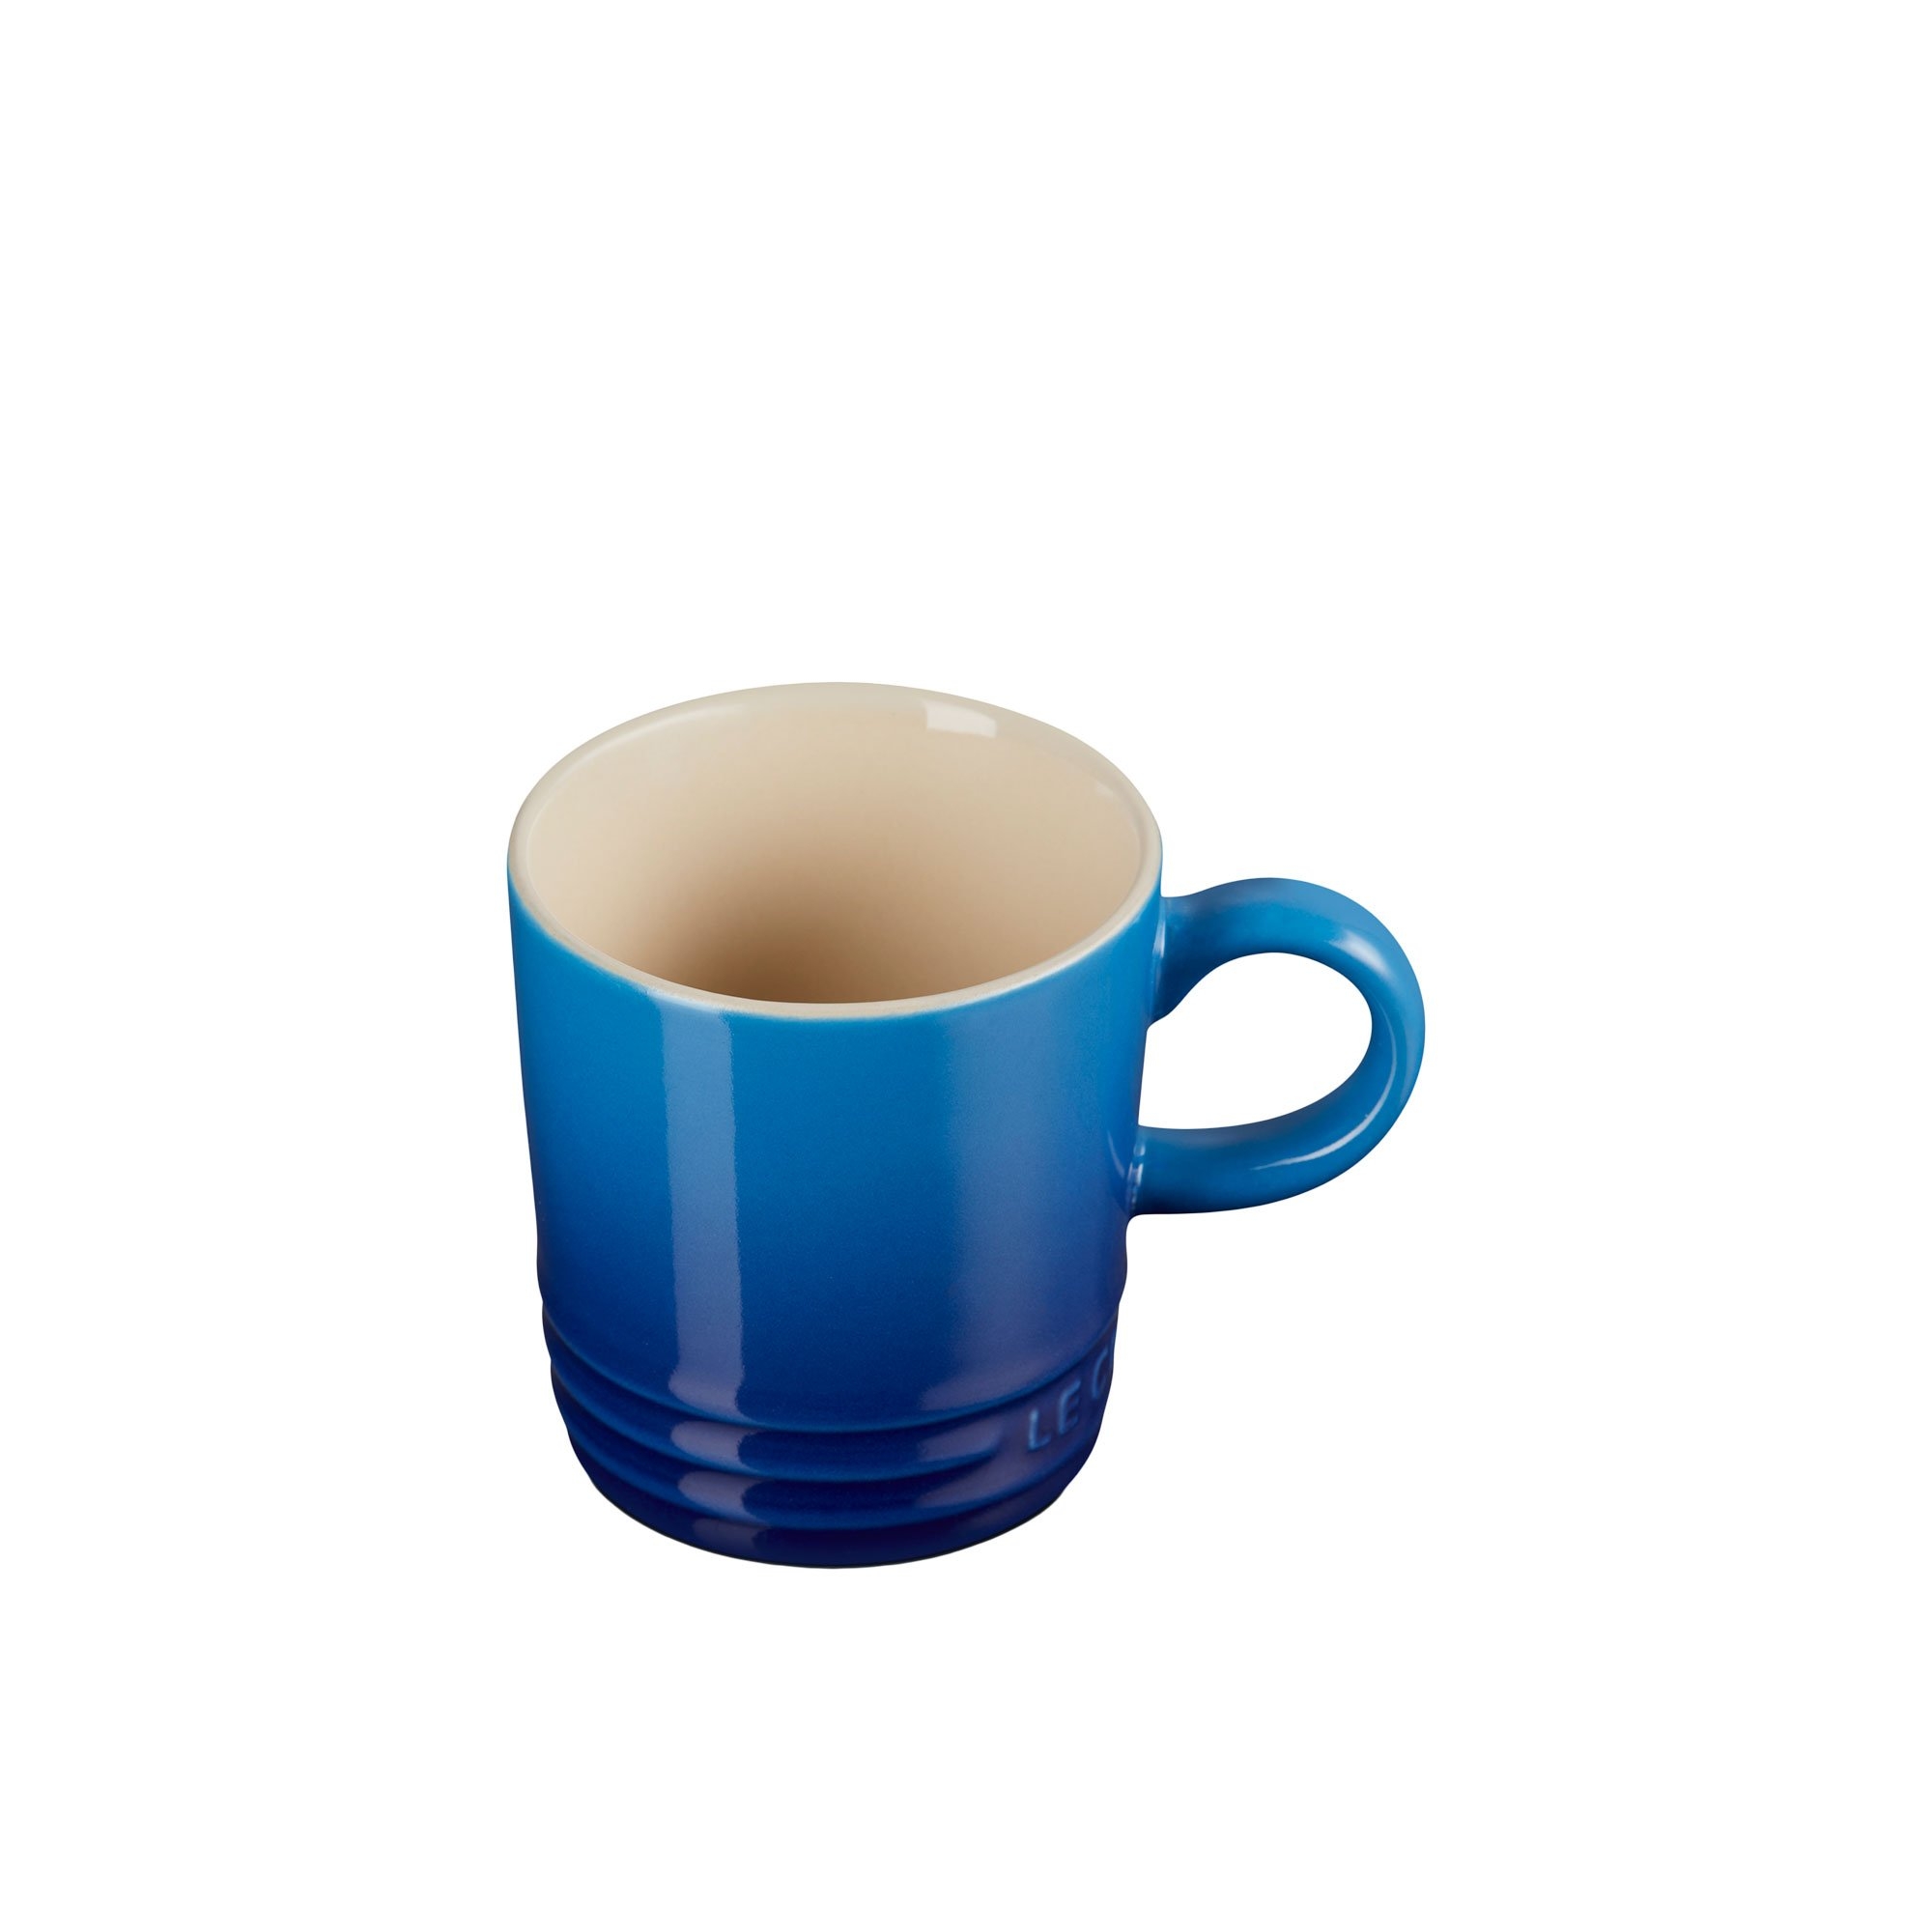 Le Creuset Stoneware Espresso Mug 100ml Azure Blue Image 2